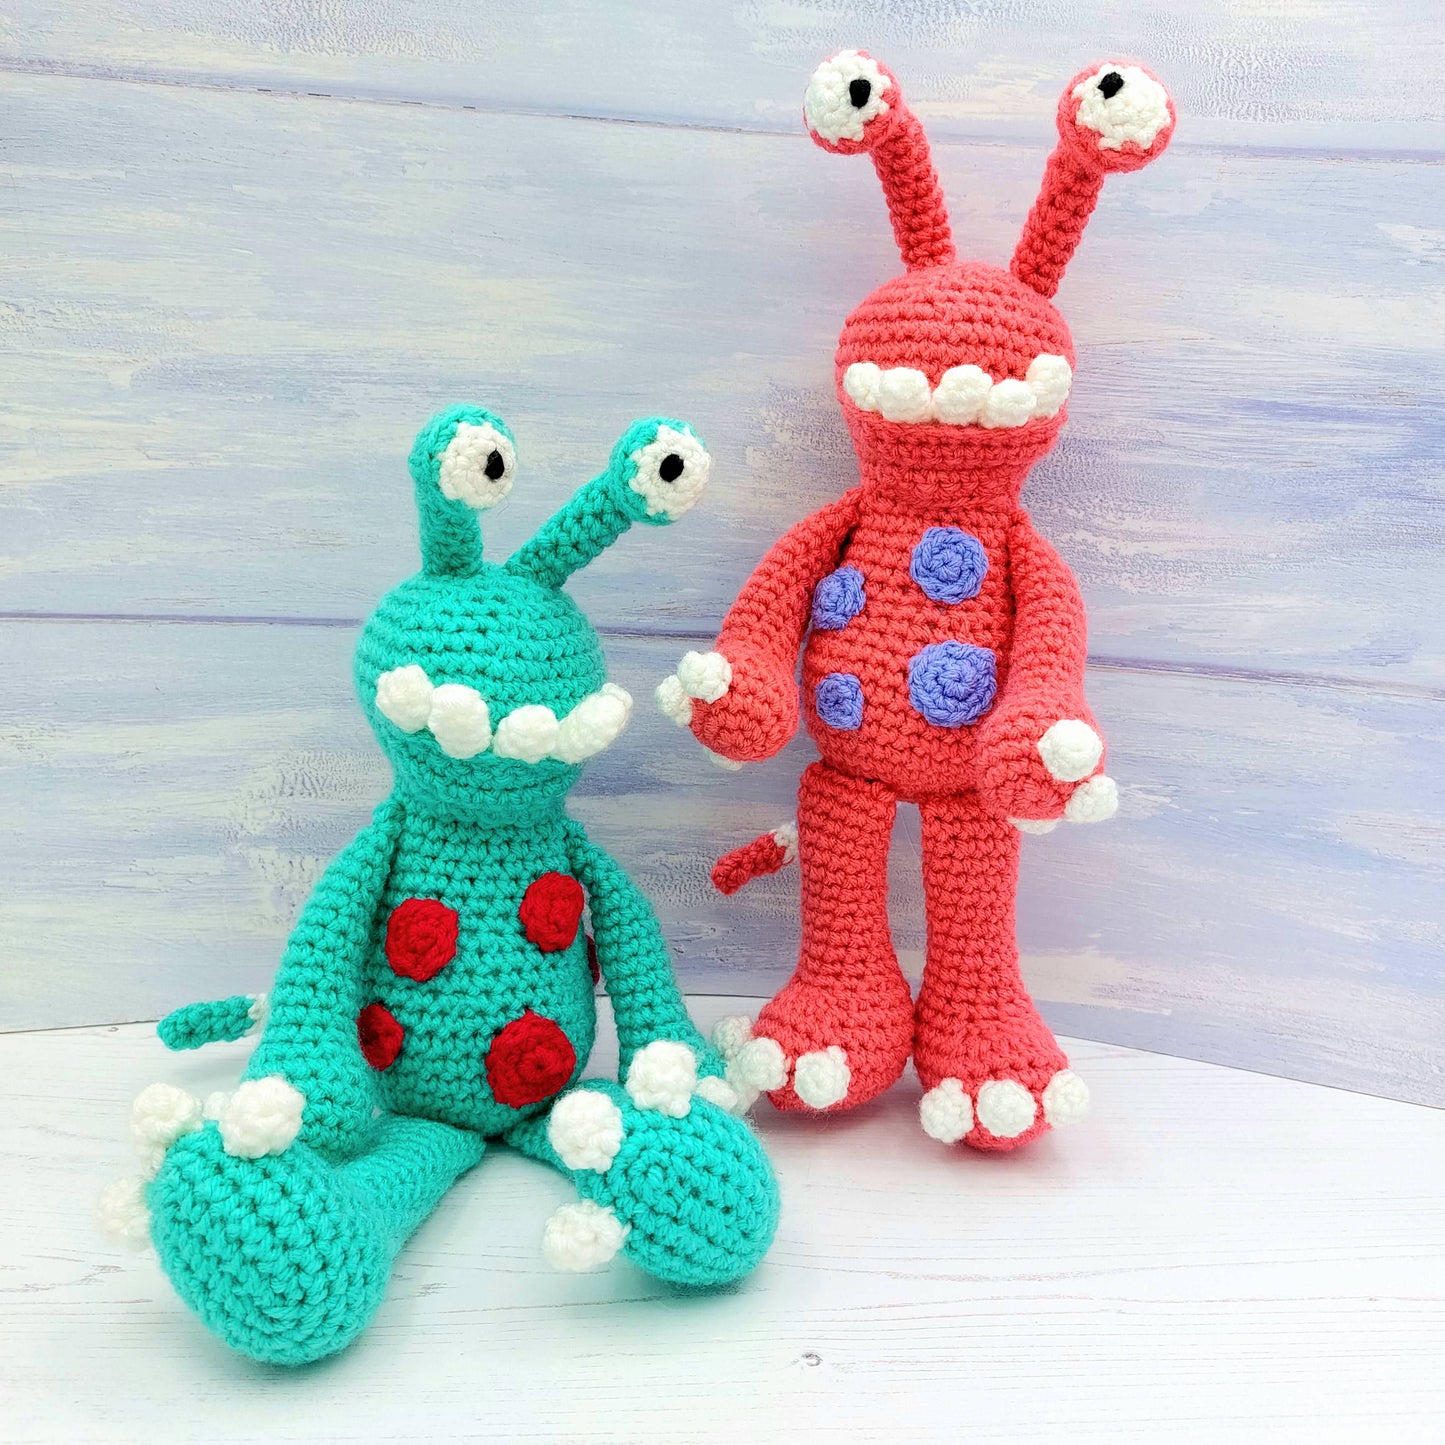 Monty & Myrtle the Monsters - PDF Crochet Pattern